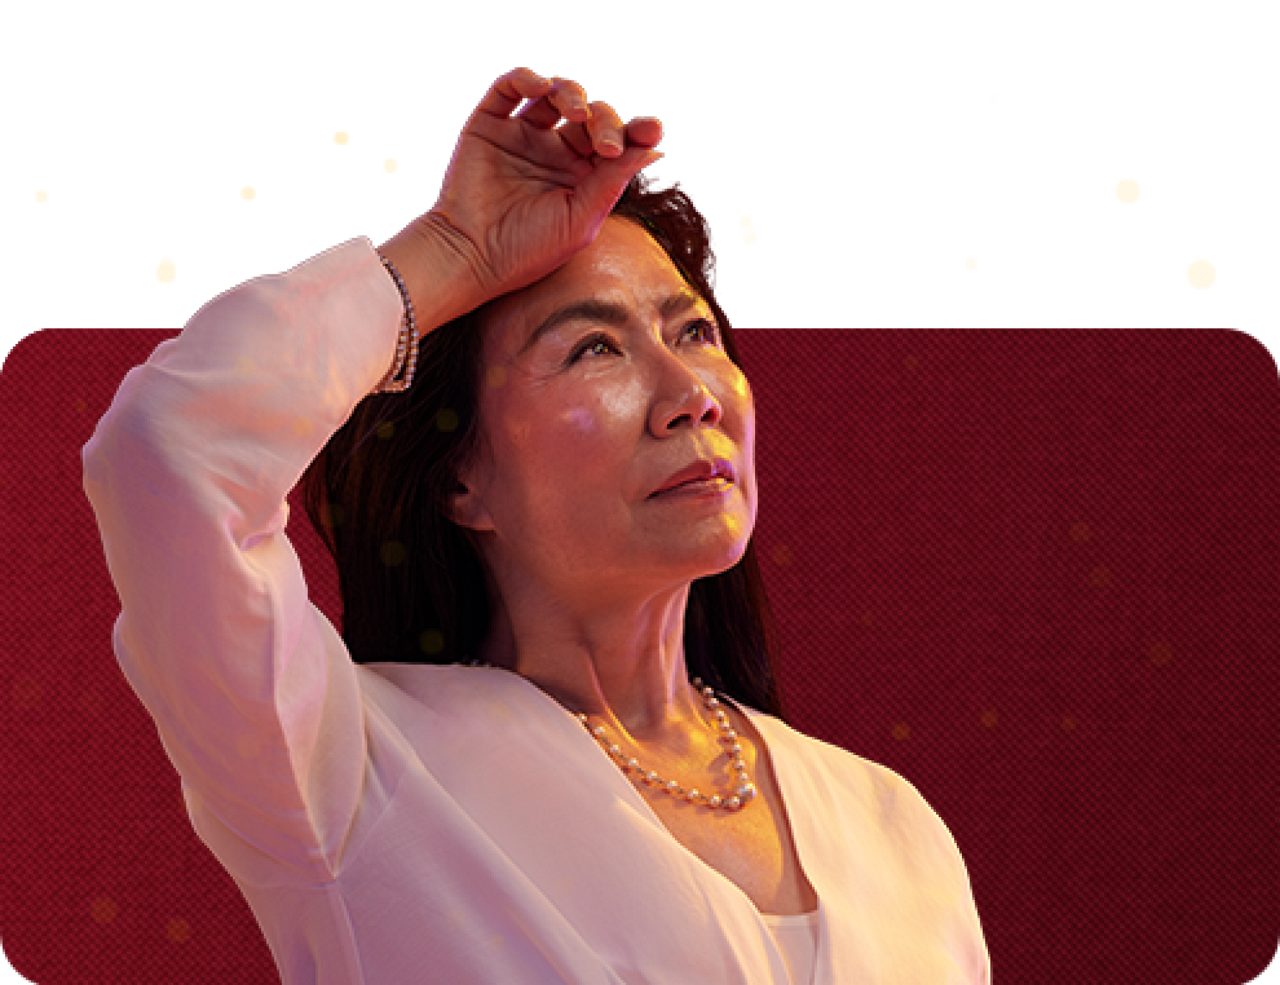 Mulher asiática na menopausa de meia-idade enxuga o suor da testa com a mão direita.